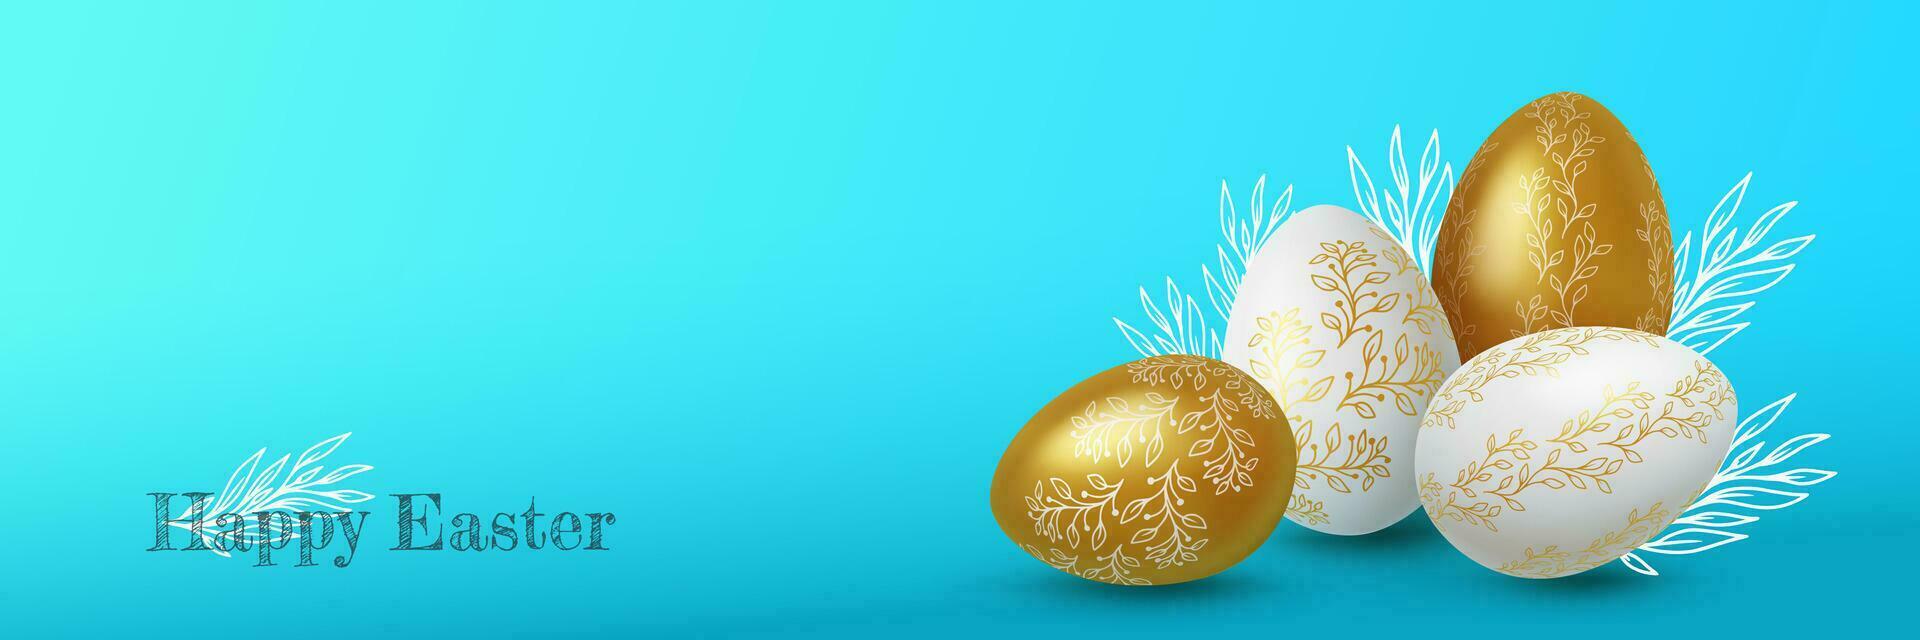 realistisk guld och vit påsk ägg med blomma ornament på blå bakgrund. vektor illustration.